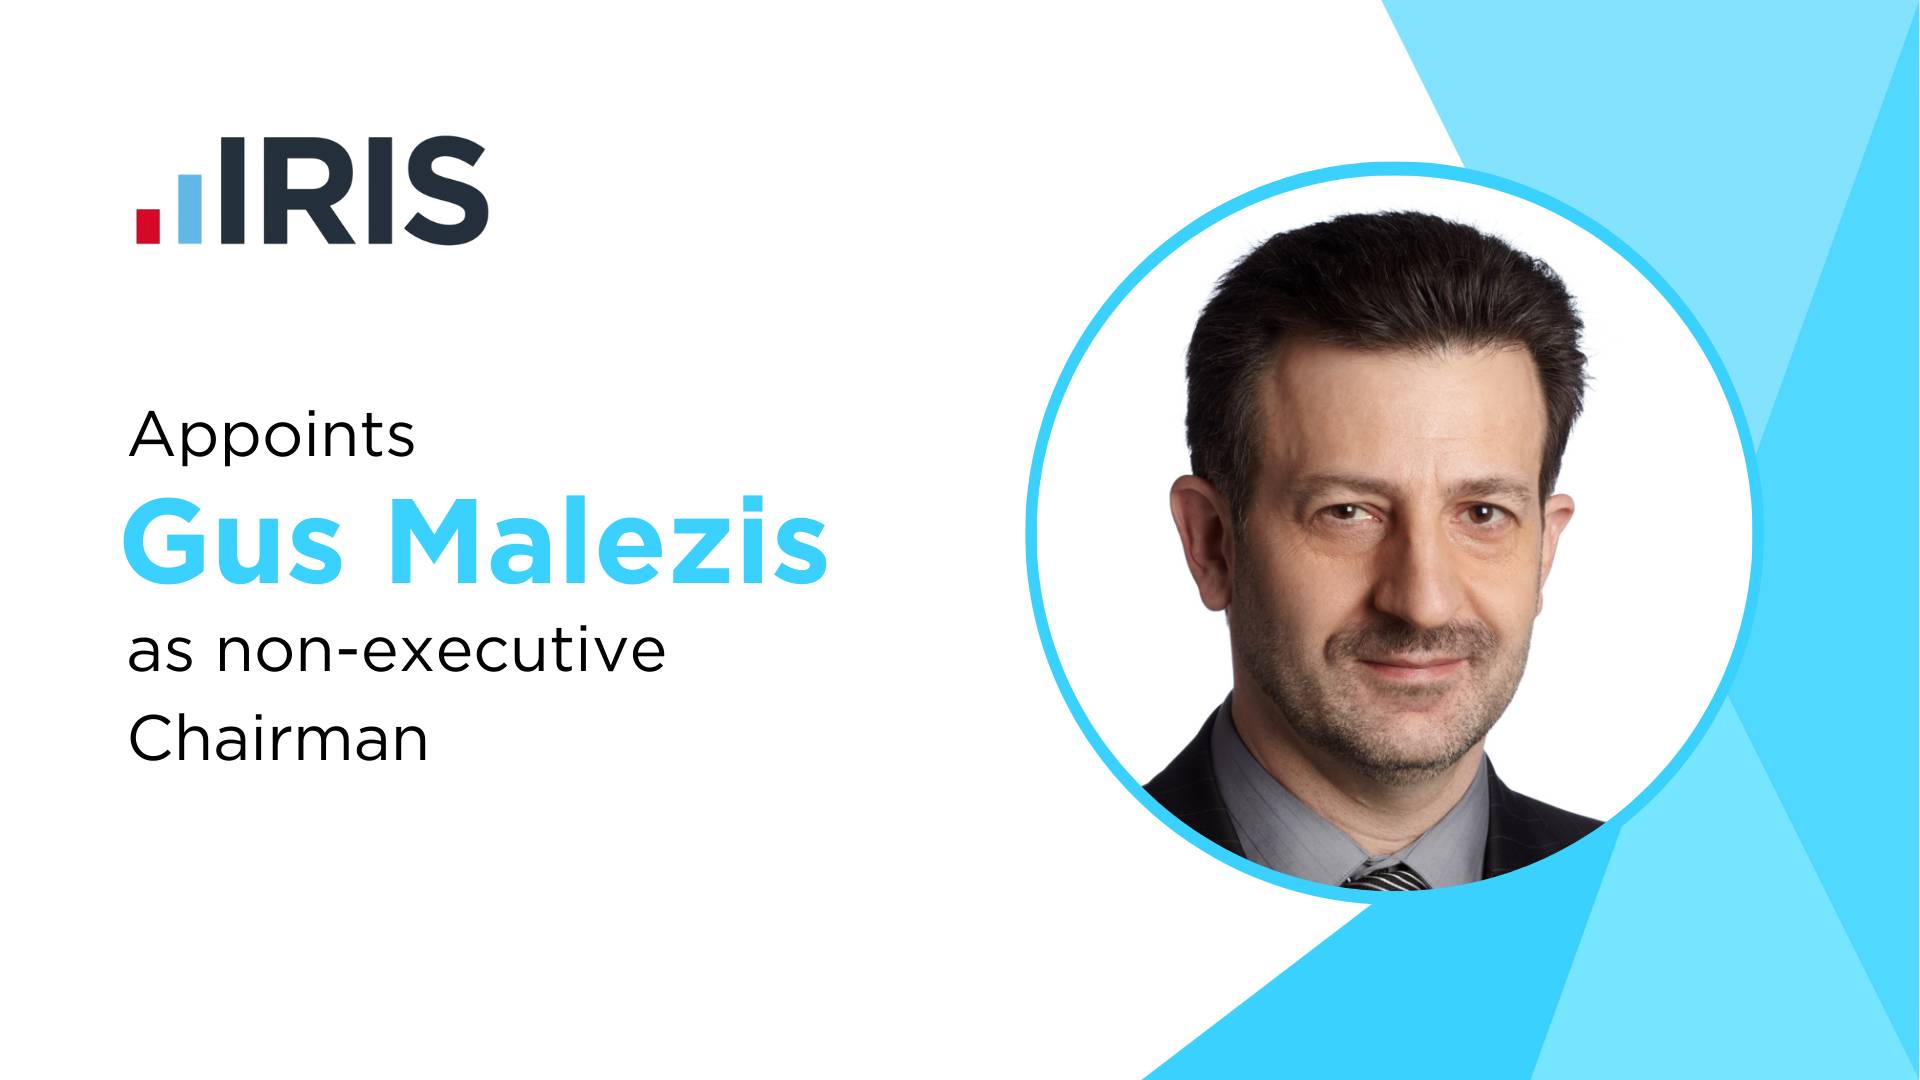 IRIS Software Group Names Gus Malezis as Non-Executive Chairman